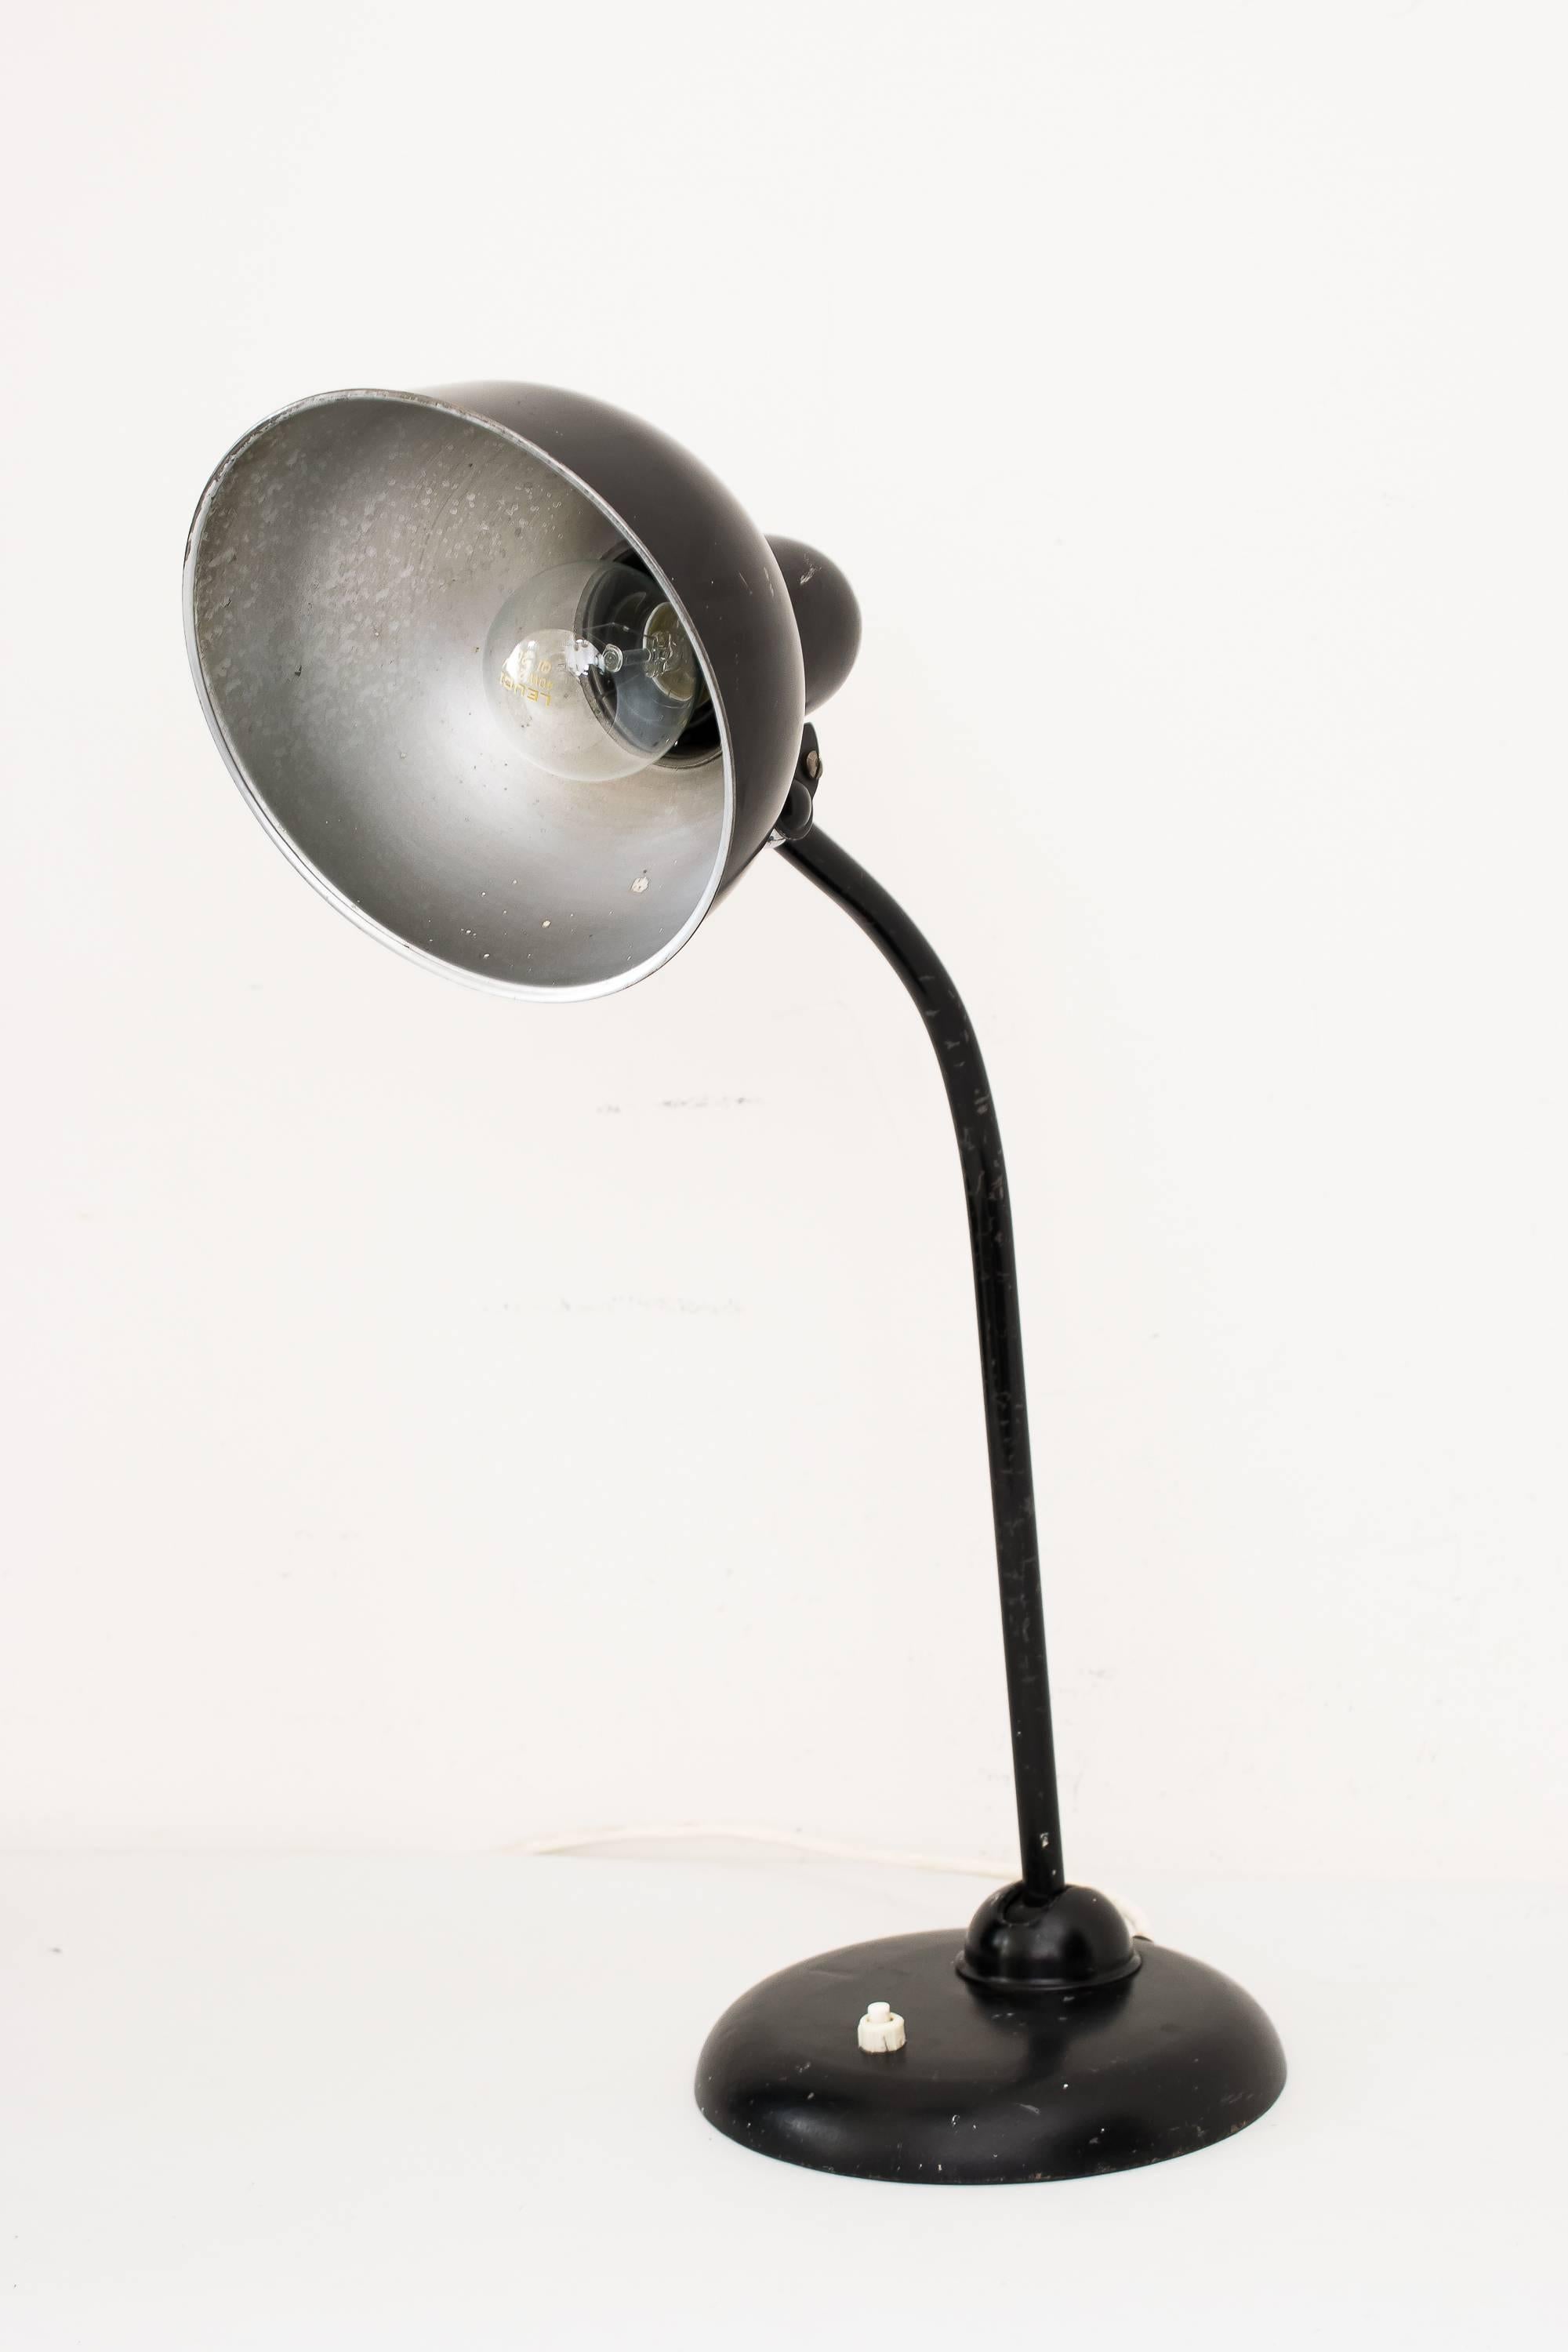 Lampe de bureau réglable en acier émaillé conçue par Christian Dell pour Idell Kaiser Allemagne, vers les années 1930.
État original.